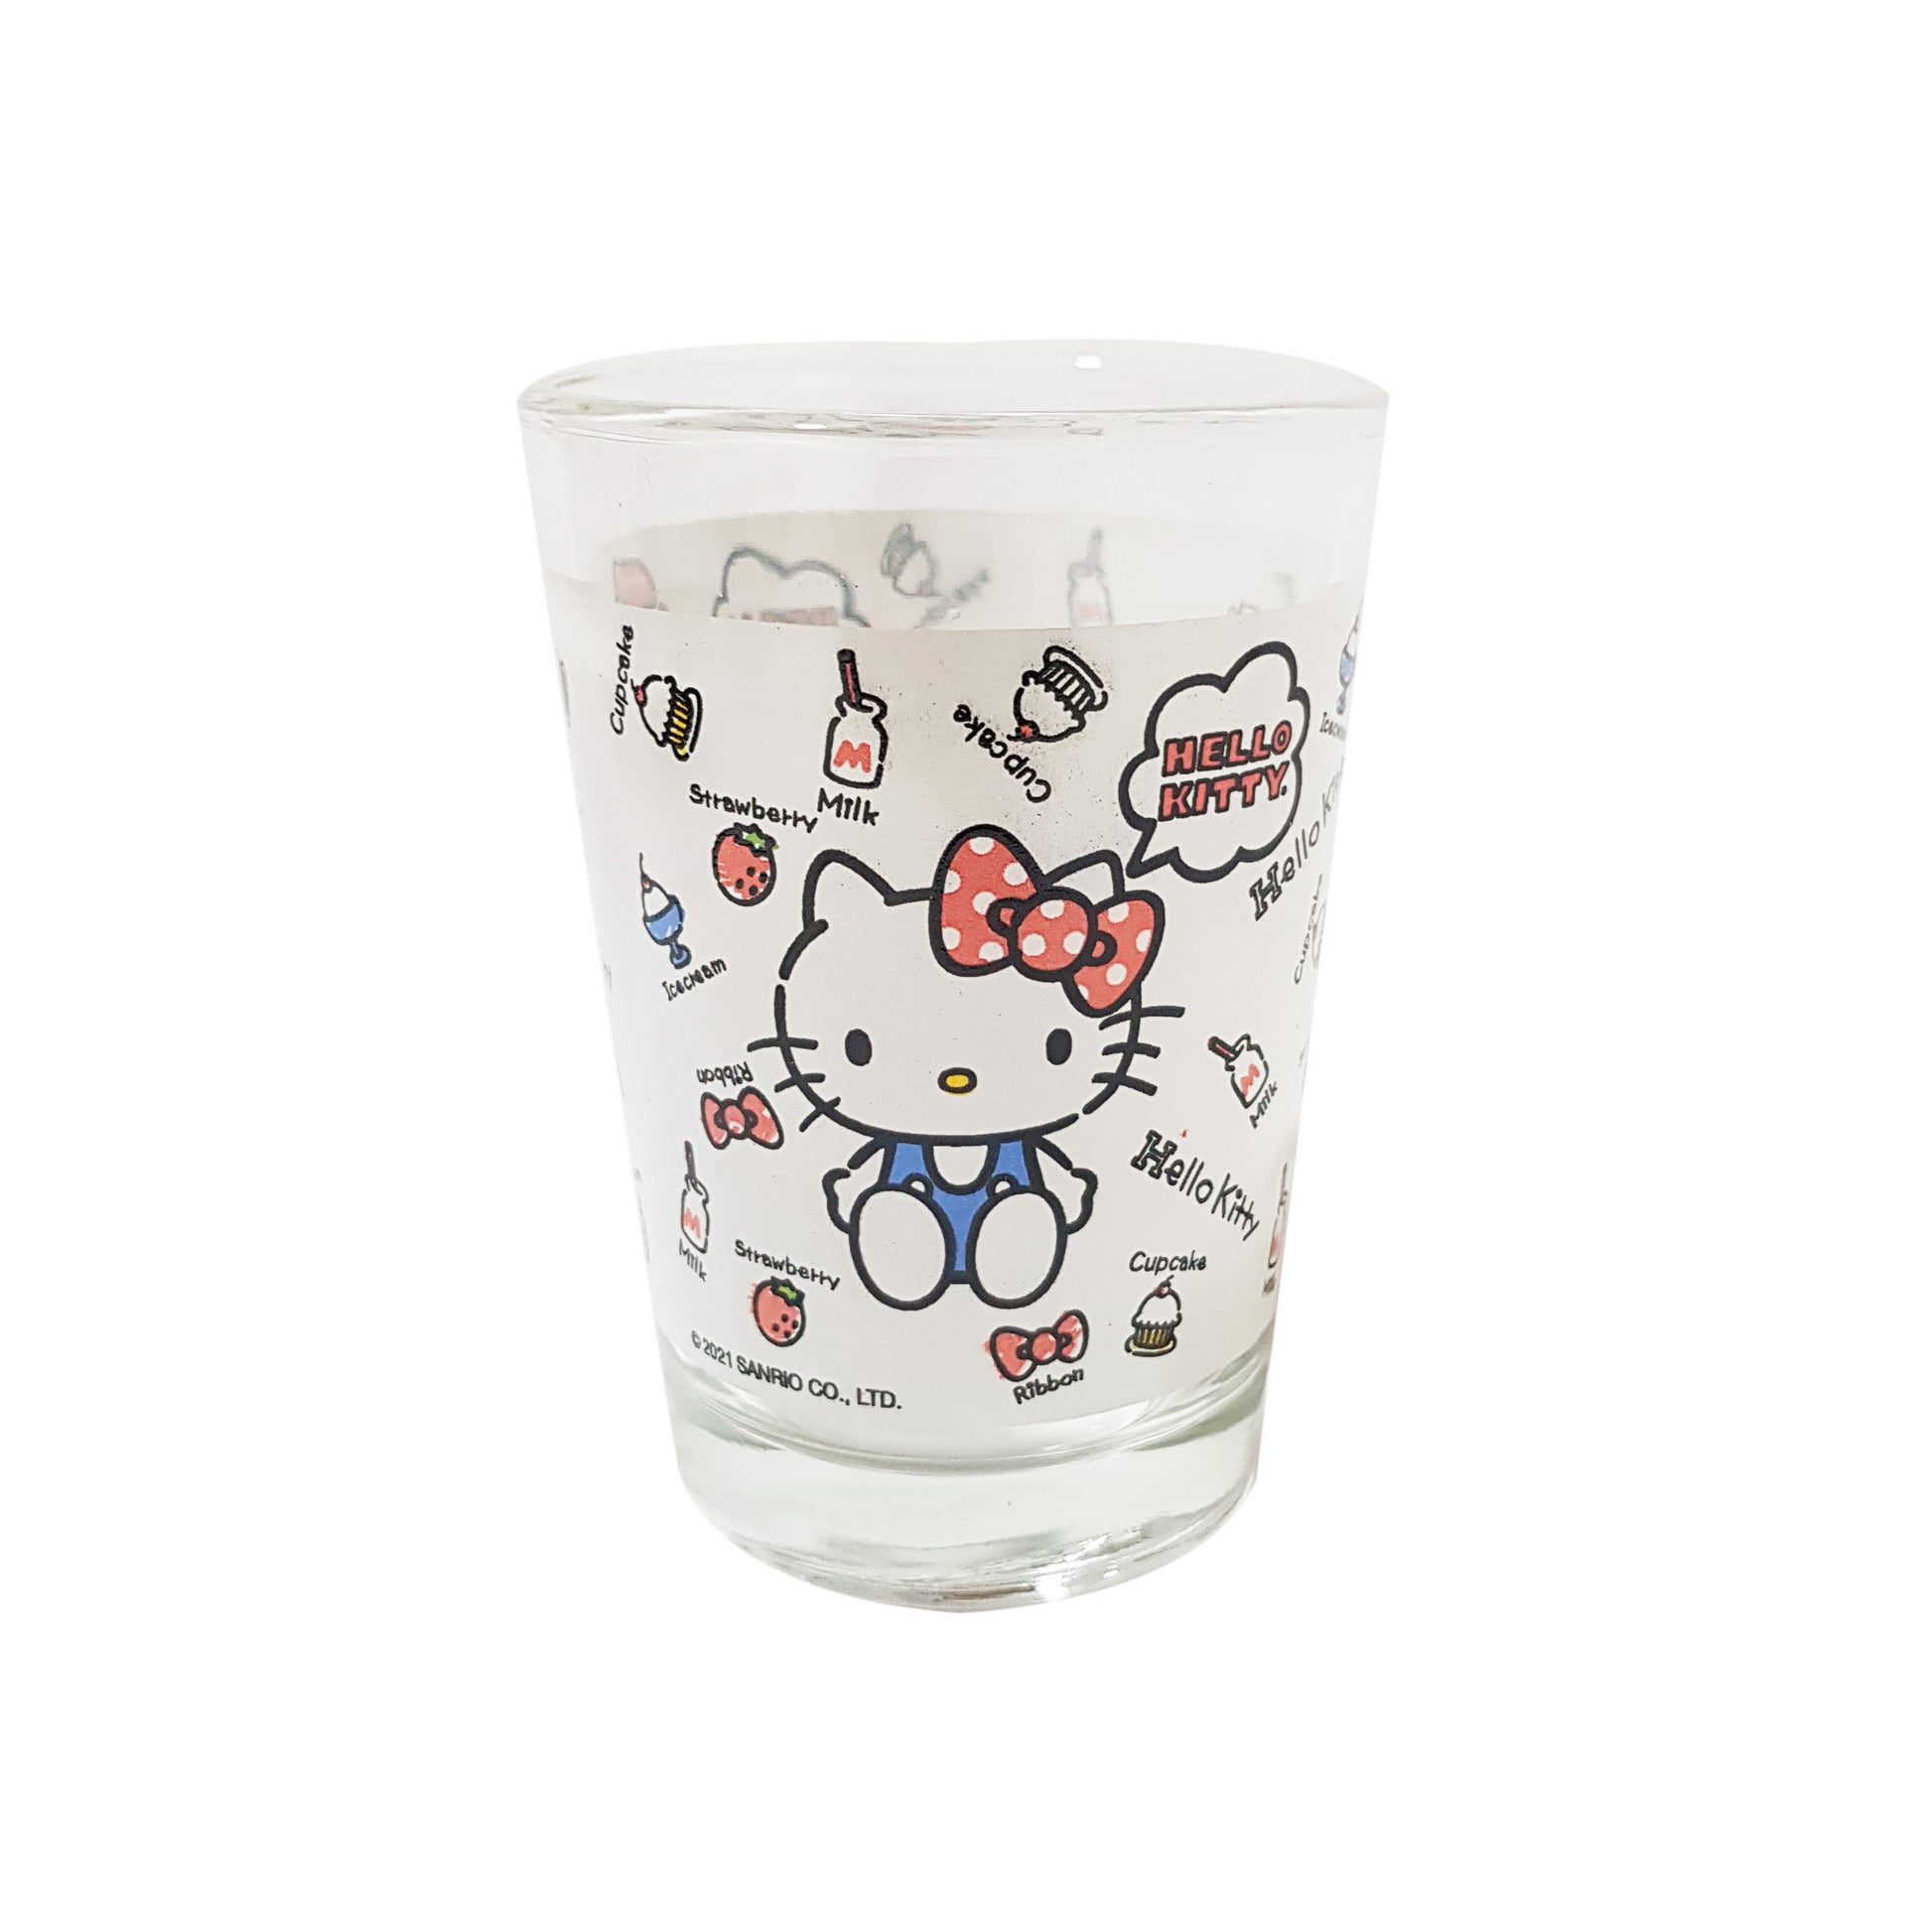 Comprar Taza de vidrio marca Disney -16 oz